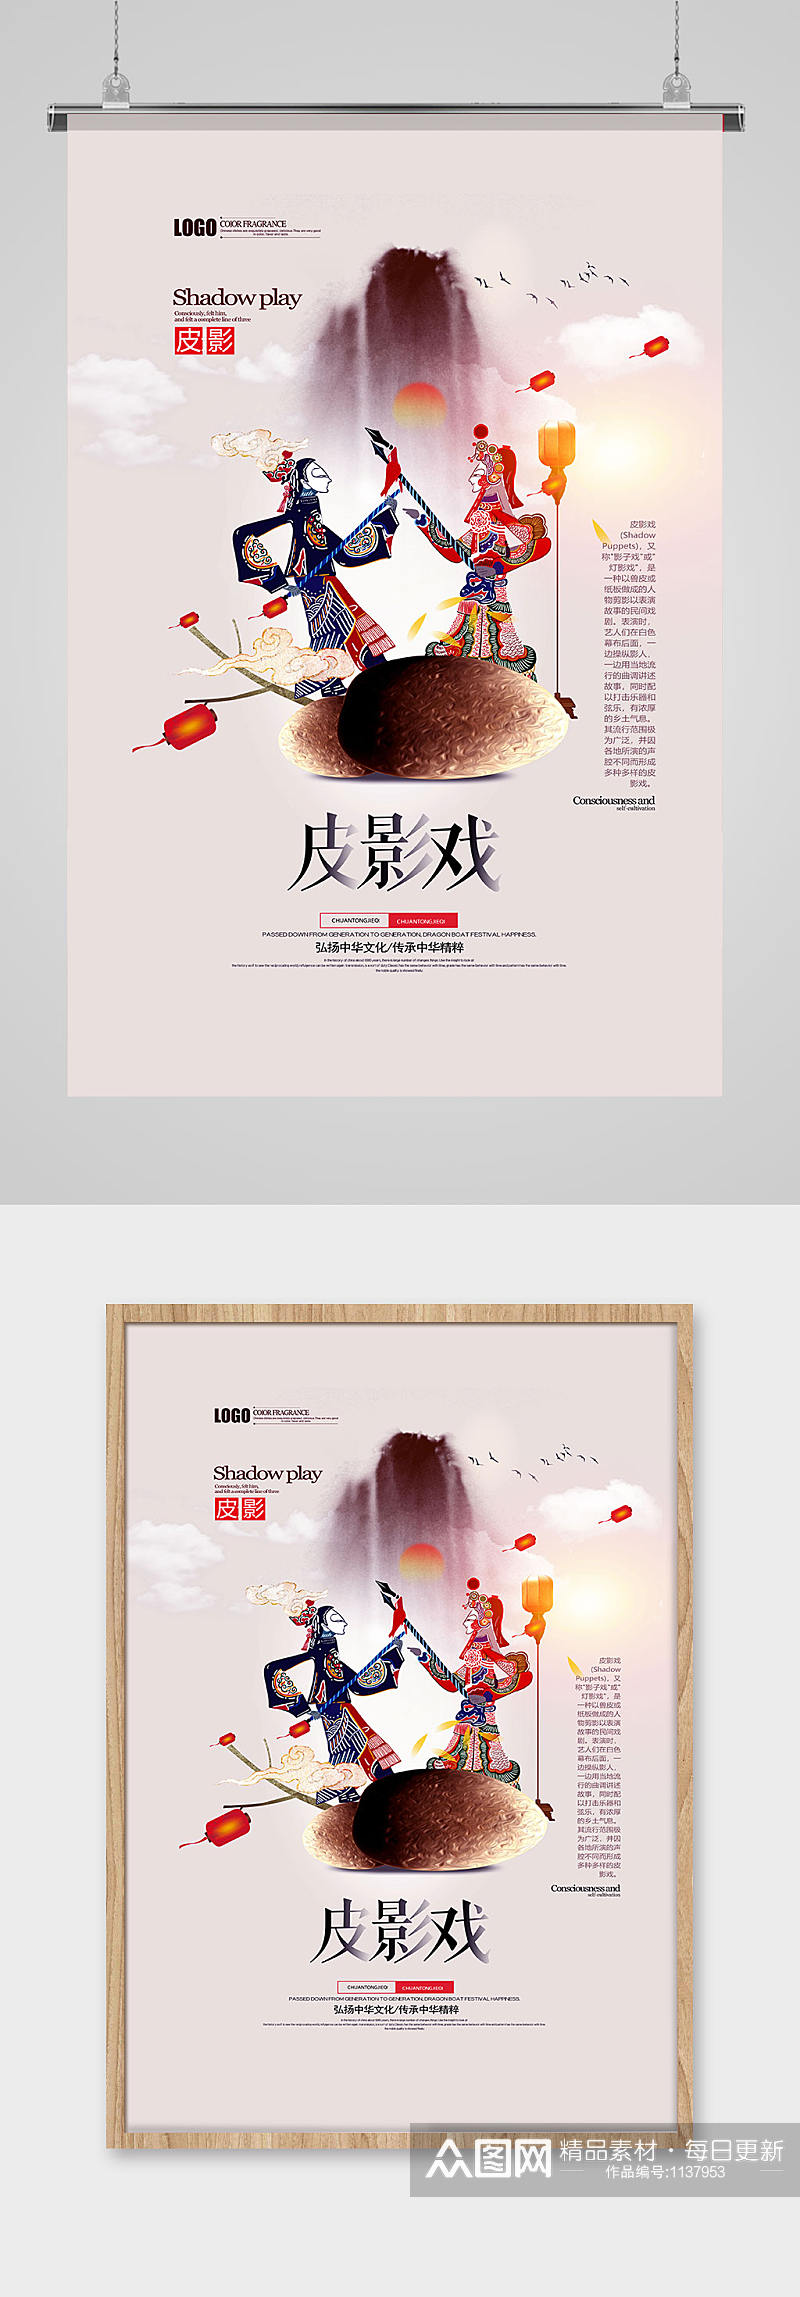 中式传统皮影戏宣传海报素材